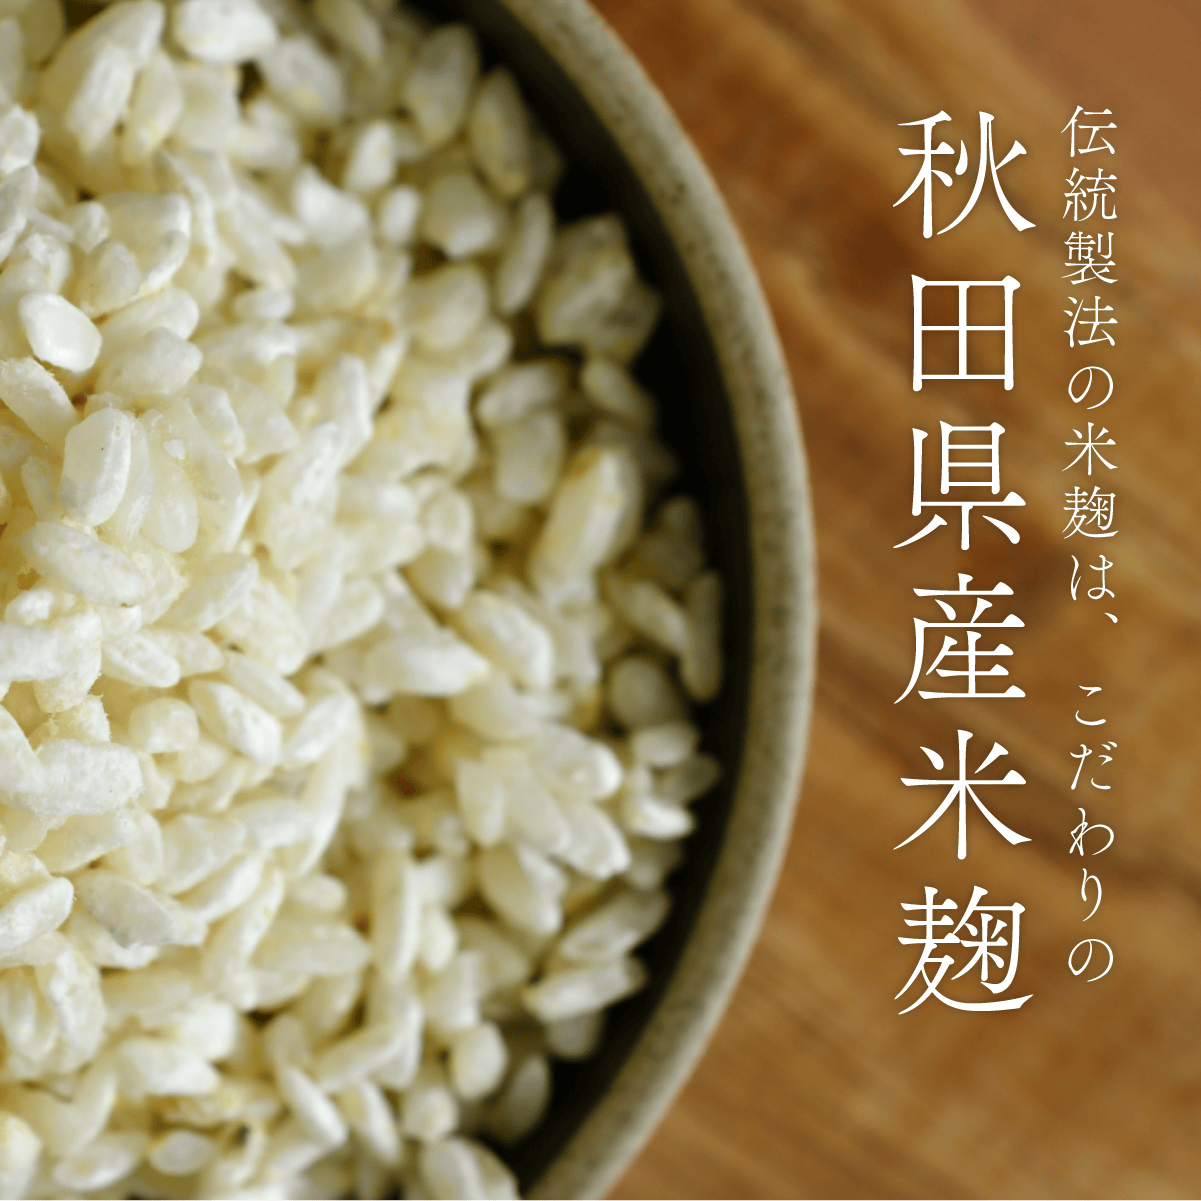 伝統製法の麹はこだわりの秋田県産米麹